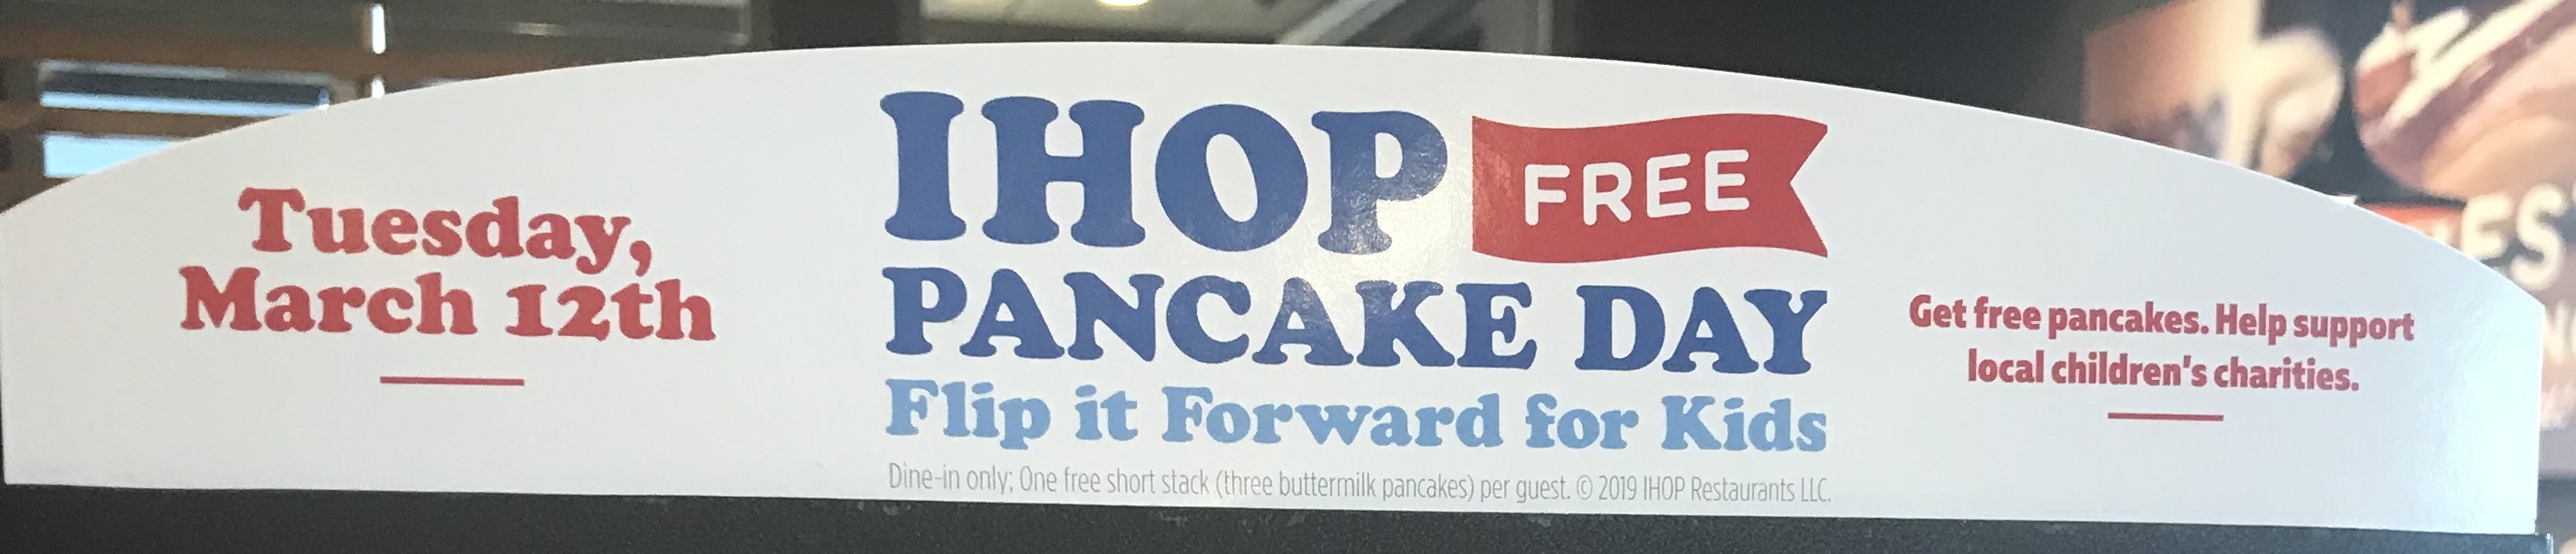 ihop free pancakes - national pancake deal